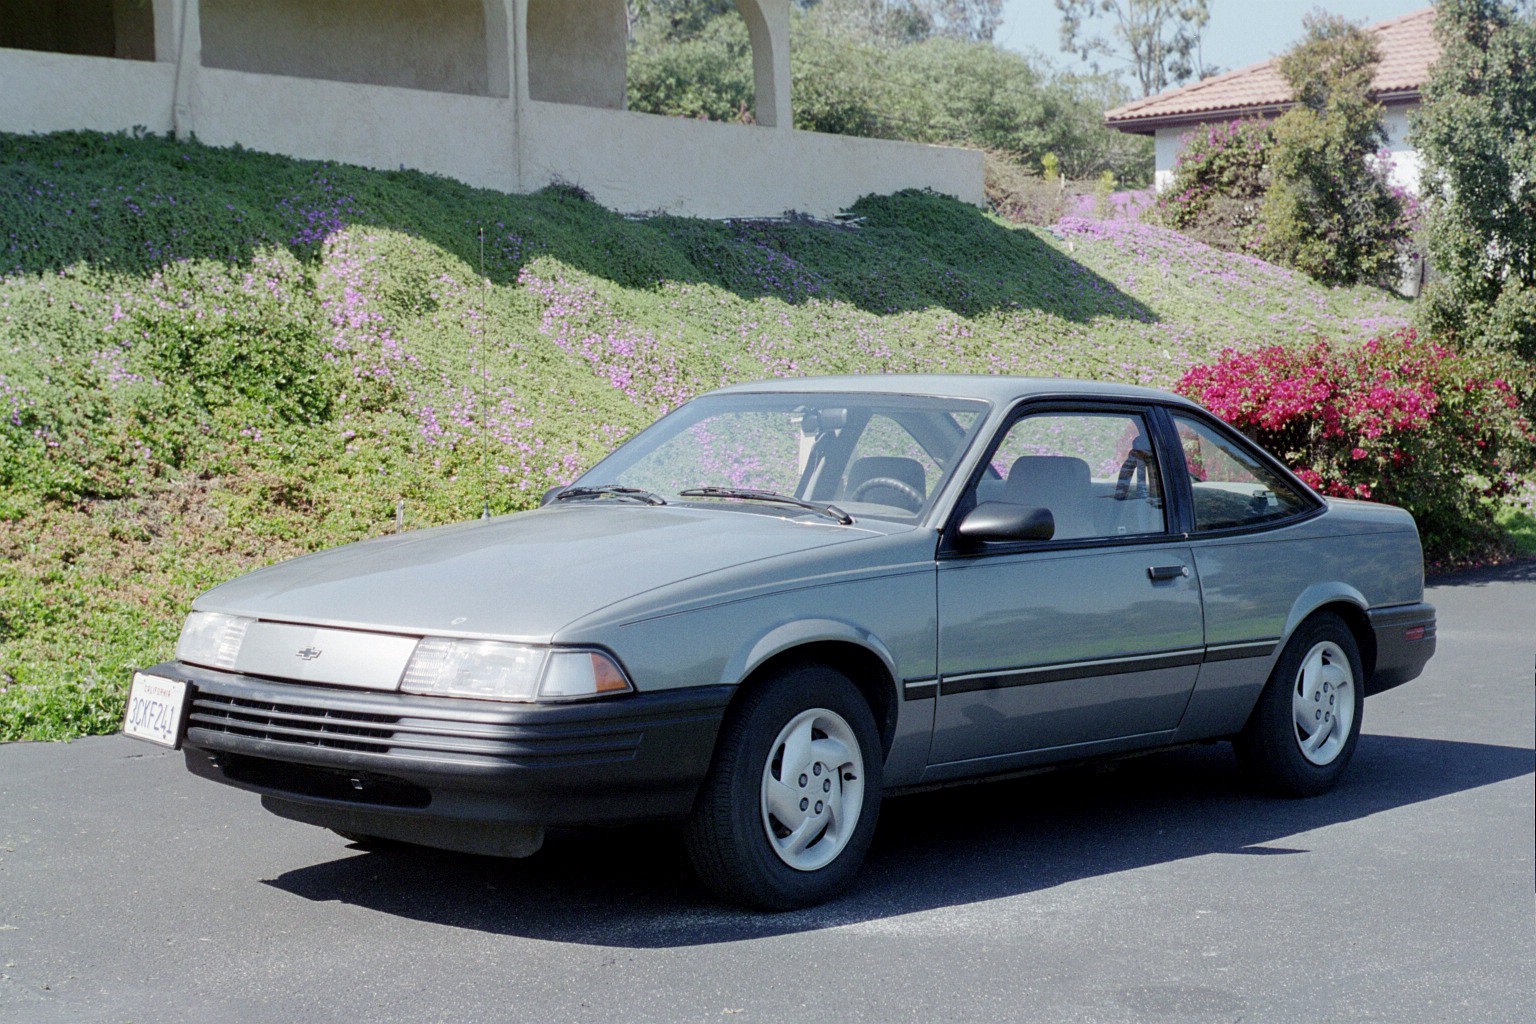 Chevrolet cavalier 1995 photo - 4